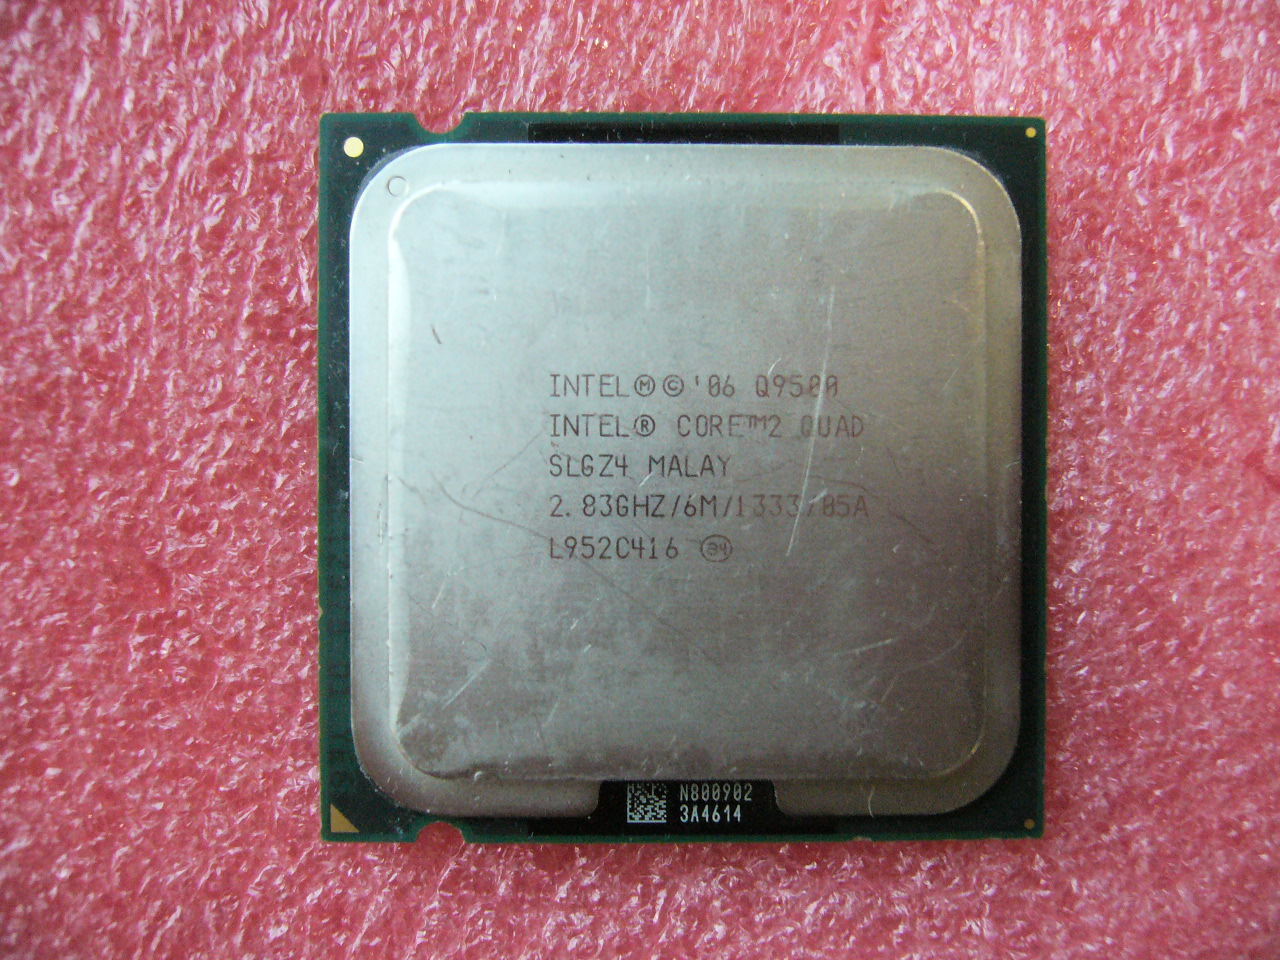 QTY 1x INTEL Quad Cores Q9500 CPU 2.83GHz/6MB/1333Mhz LGA775 SLGZ4